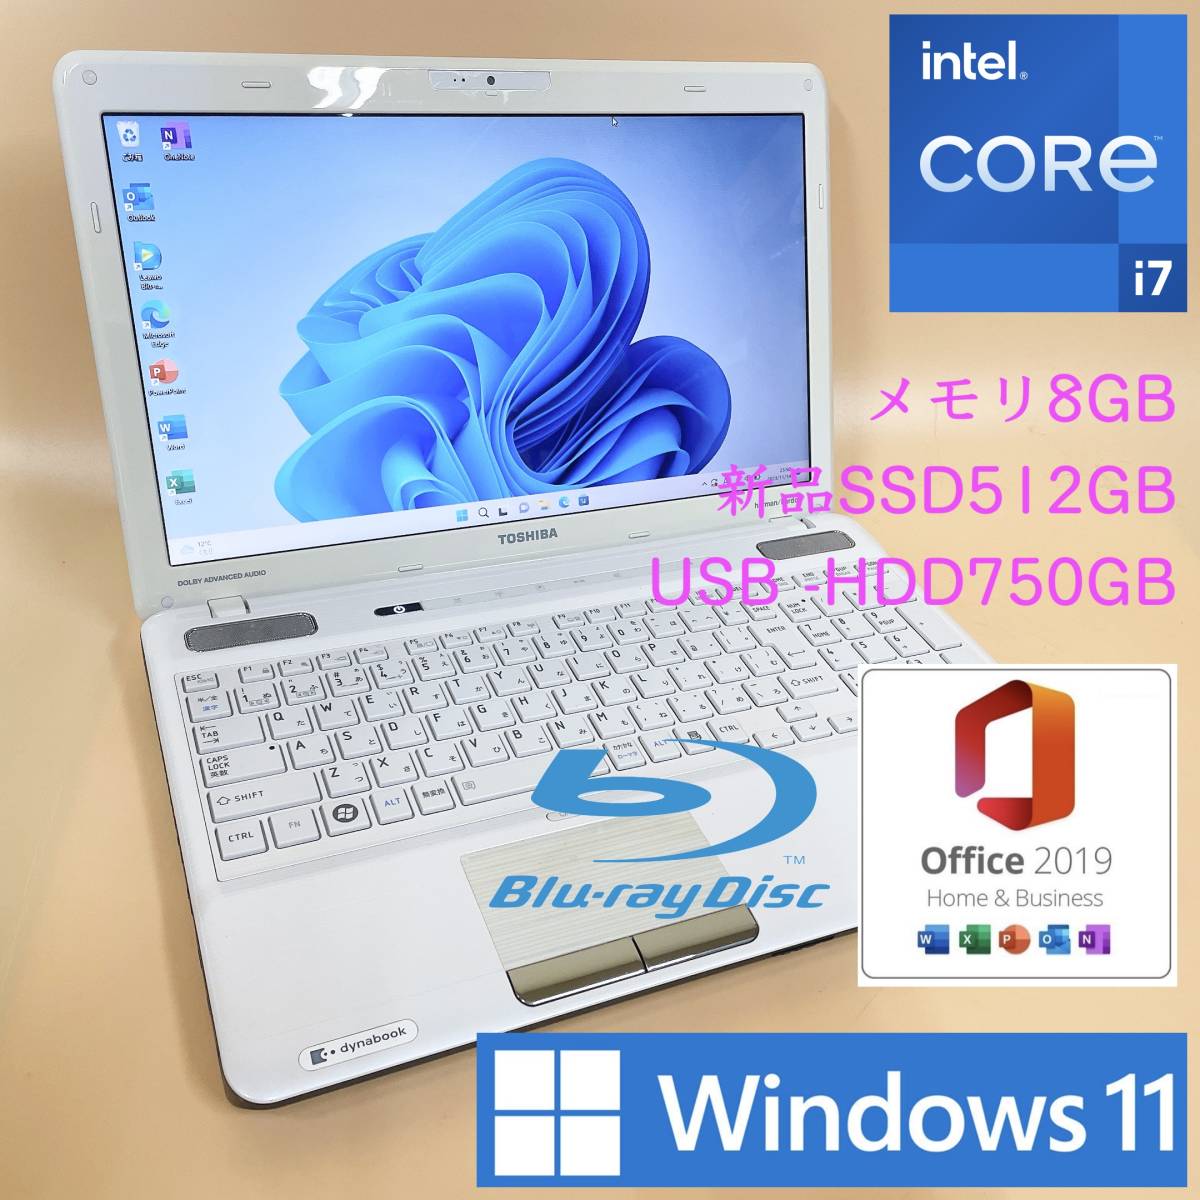 [最強i7+新品SSD512GB+HDD750GB+メモリ8GB] 東芝 dynabook T551/59 i7-2670QM/Windows11/office2019 H&B/Blu-Ray/Webカメラ/USB3.0_画像1